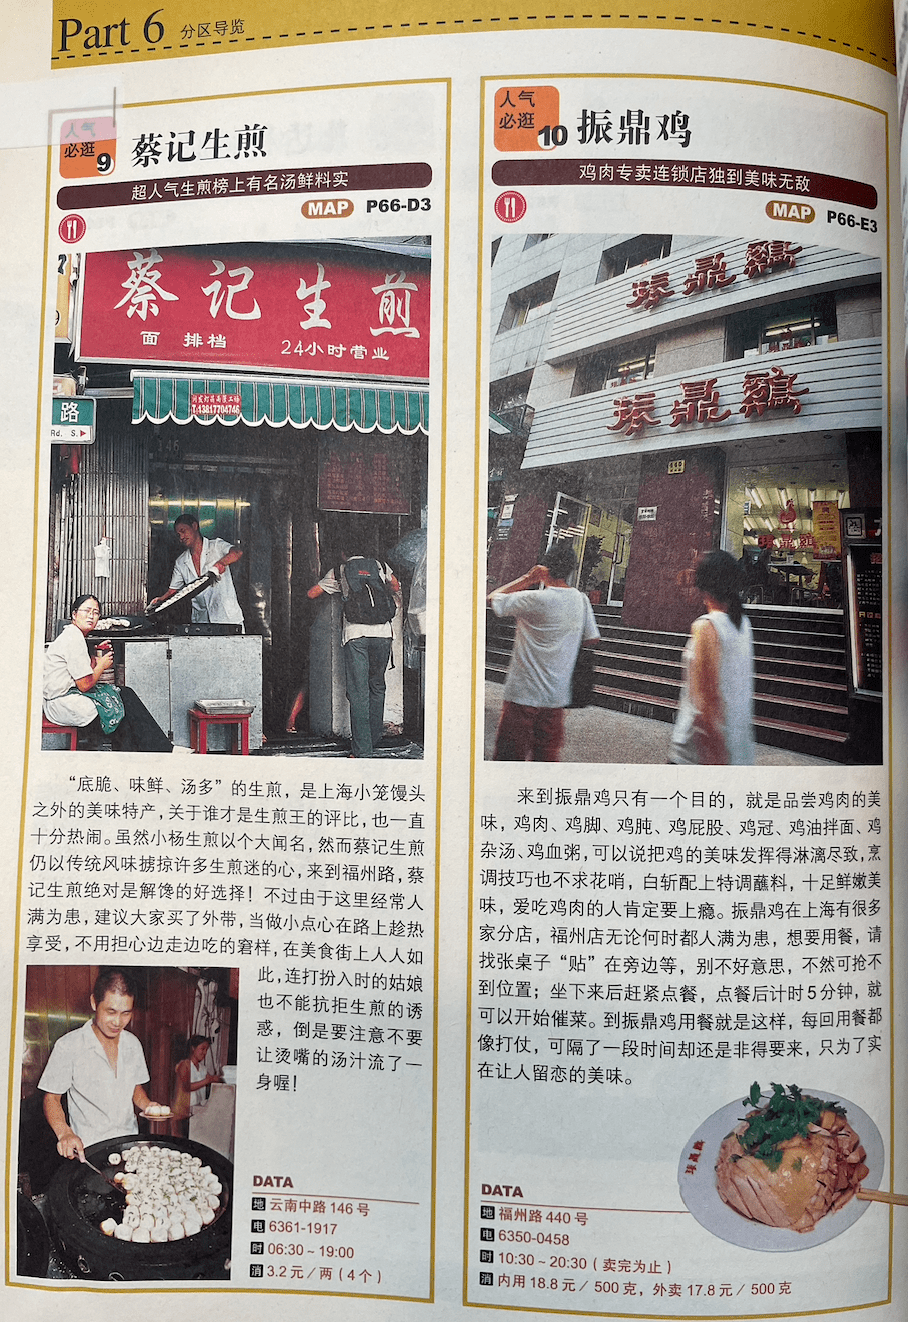 2007年的指南中上海人常吃的振鼎鸡上榜了